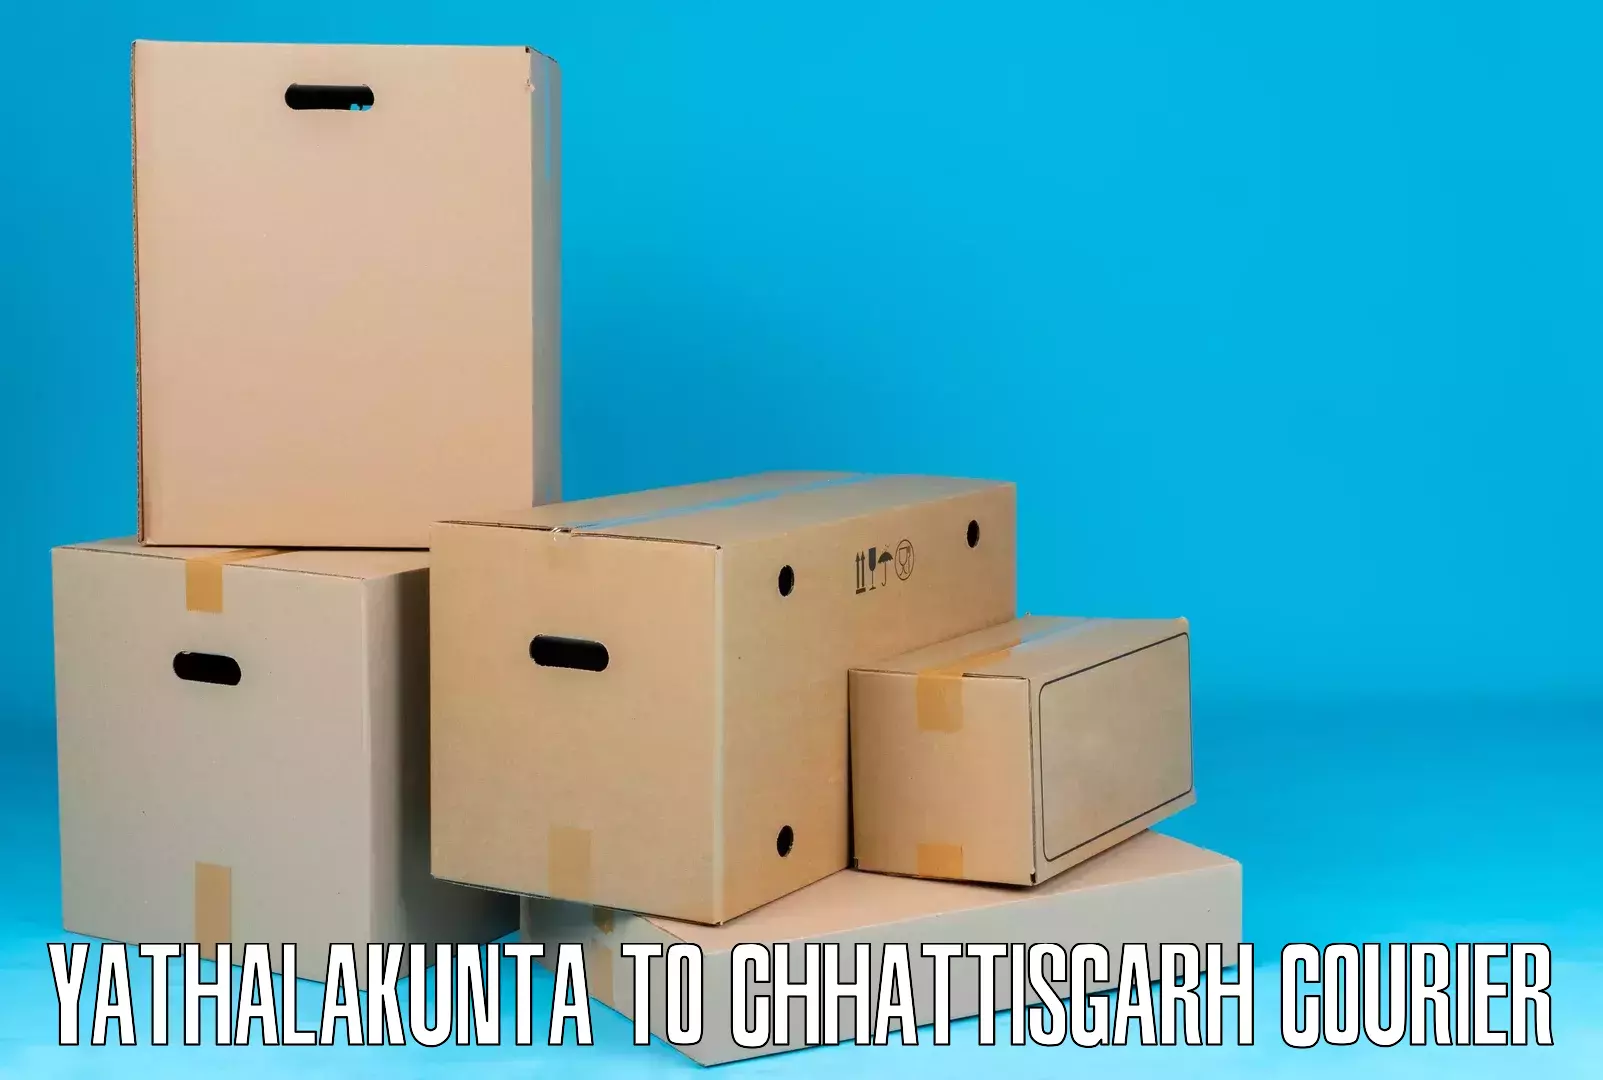 Cost-effective courier options Yathalakunta to Kunkuri